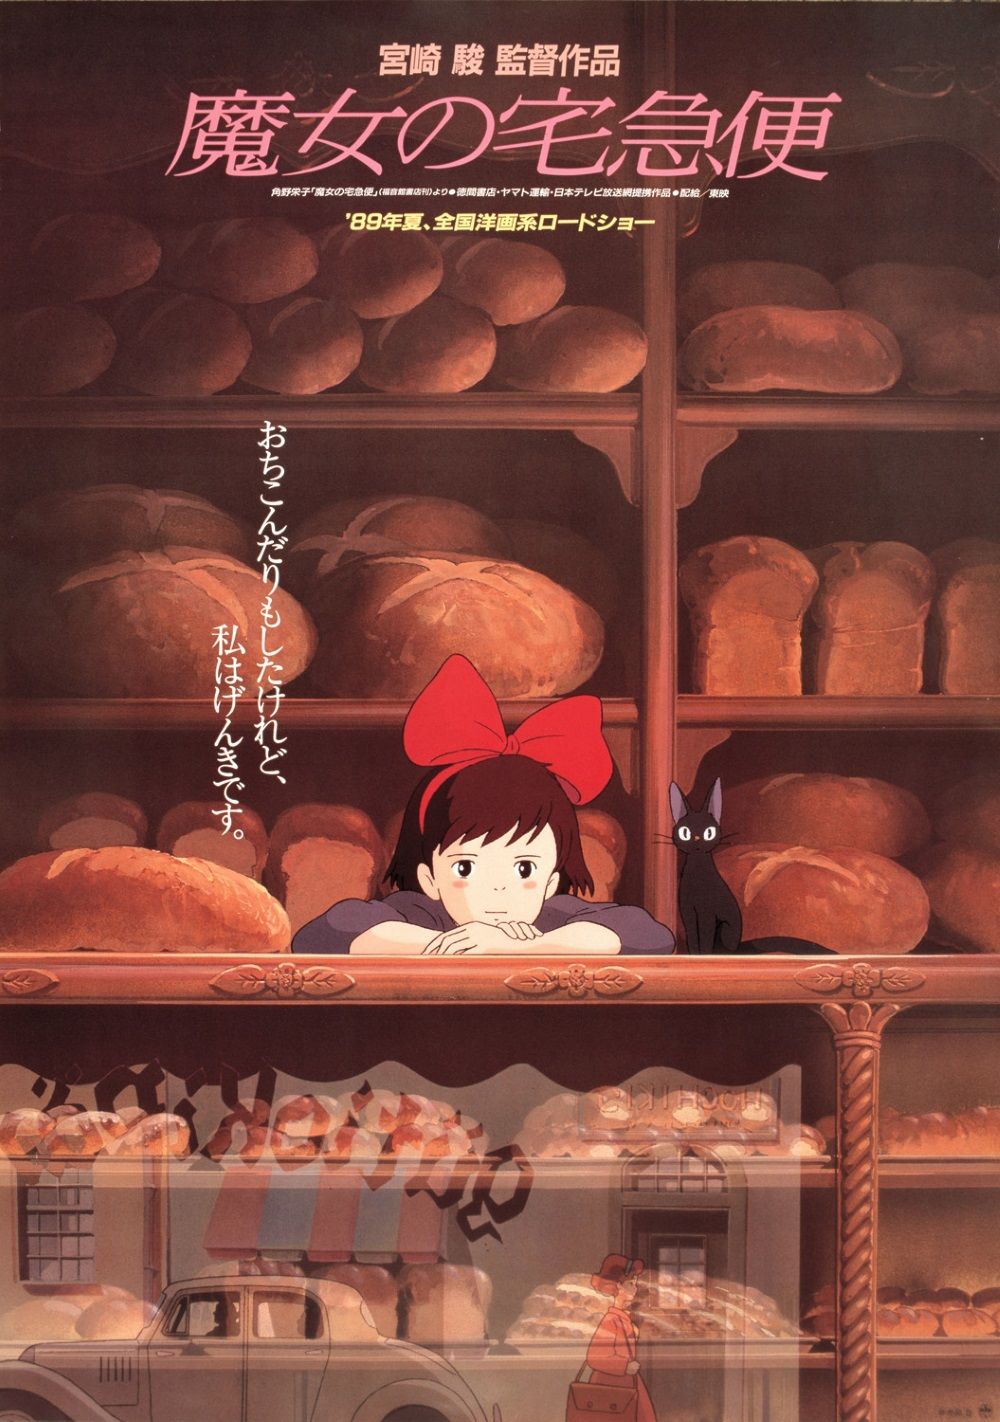 Alla (ri)scoperta dello Studio Ghibli: Kiki - Consegne a domicilio